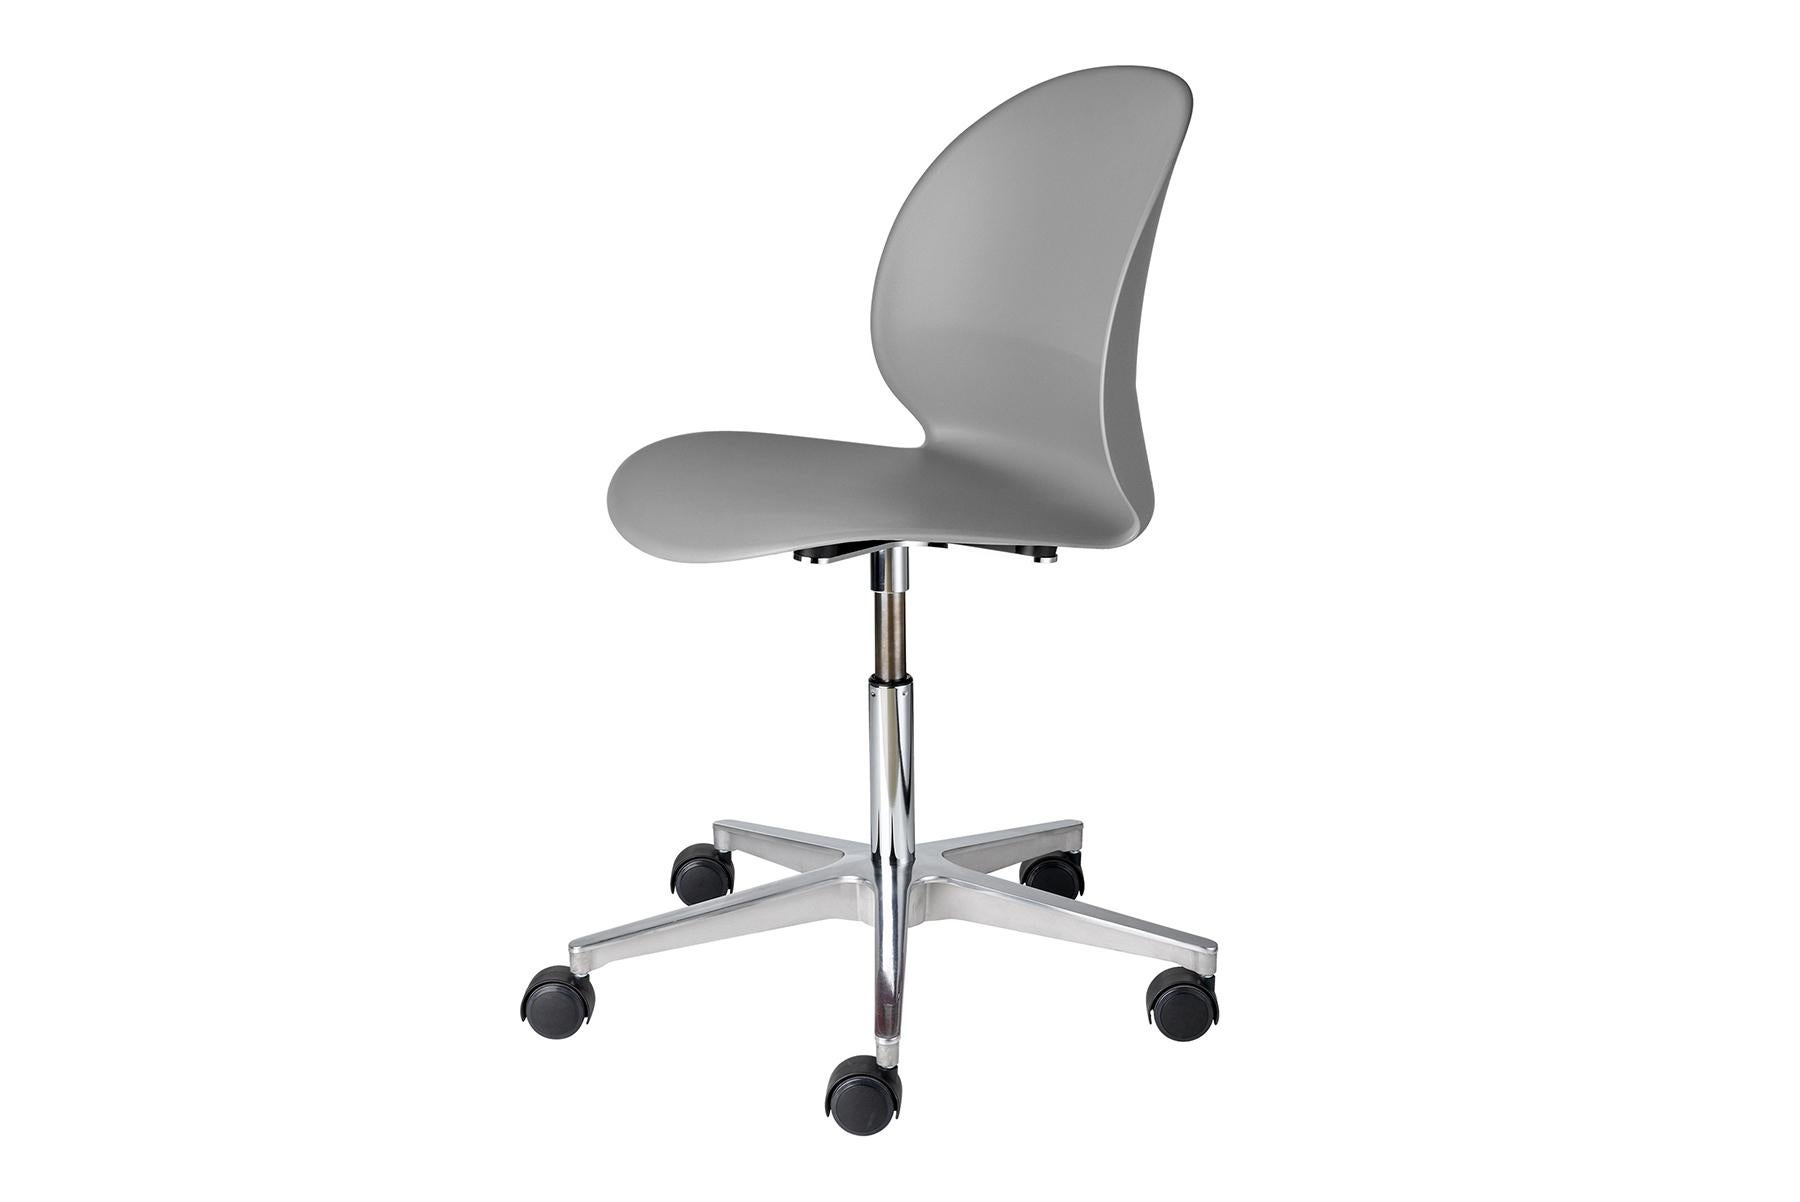 N02 Recycle ist ein stabiler, stapelbarer Stuhl des japanischen Studios nendo, inspiriert von einer einfachen Papierfalte auf dem Arbeitstisch des Designers. Die elegante Schale des Stuhls ist aus rundem Kunststoff, d. h. sie besteht aus recyceltem